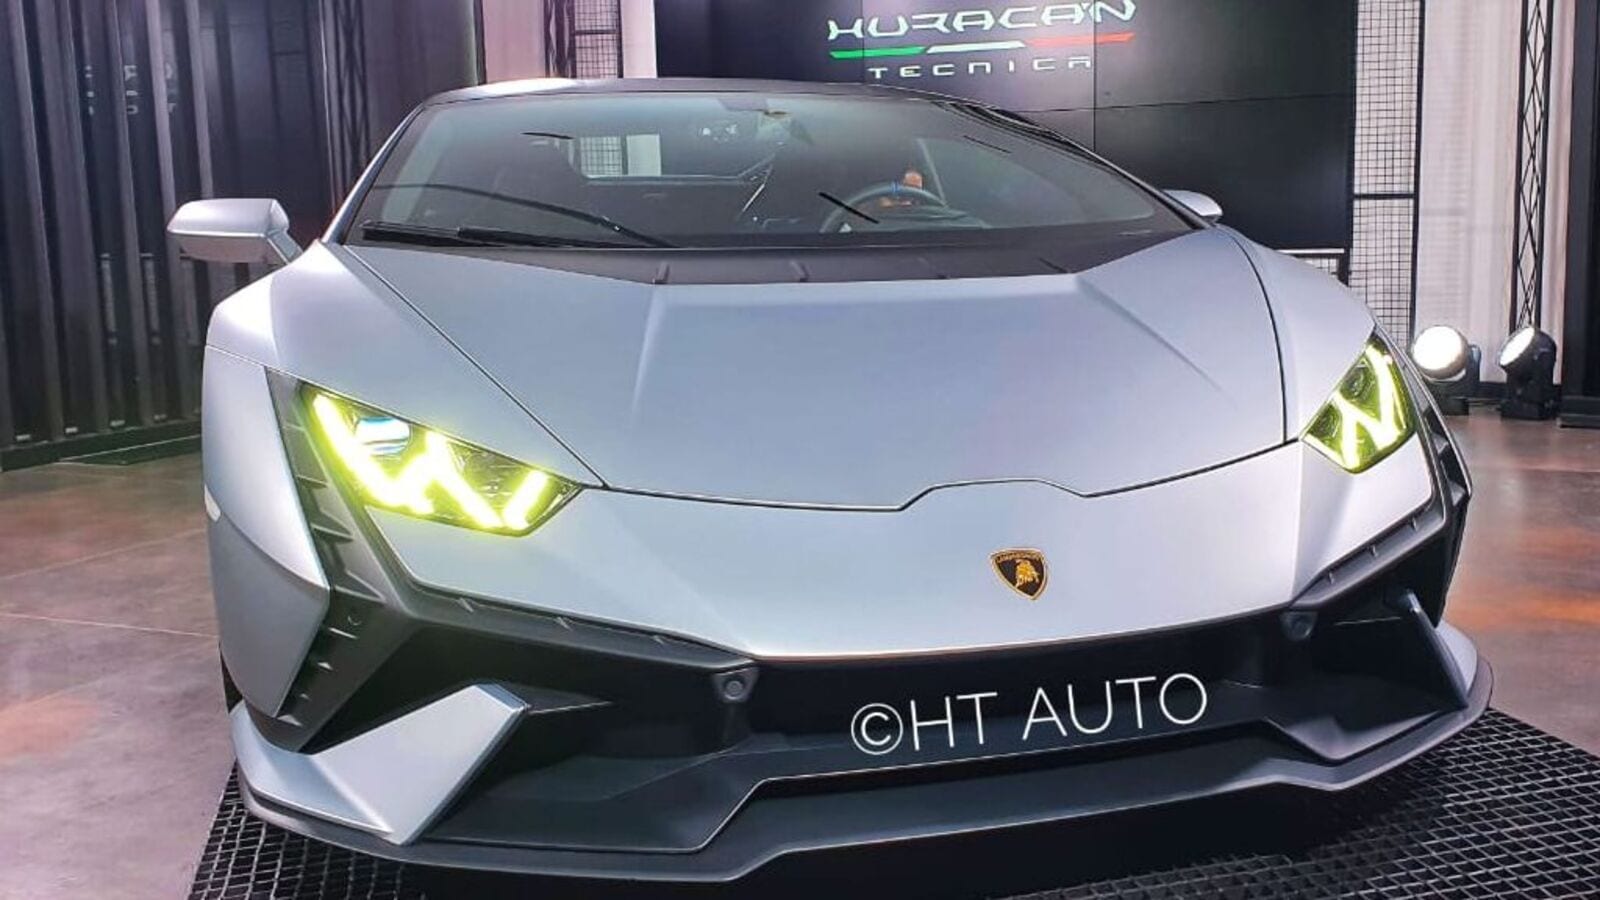 Lamborghini Huracan Tecnica launched in India | HT Auto